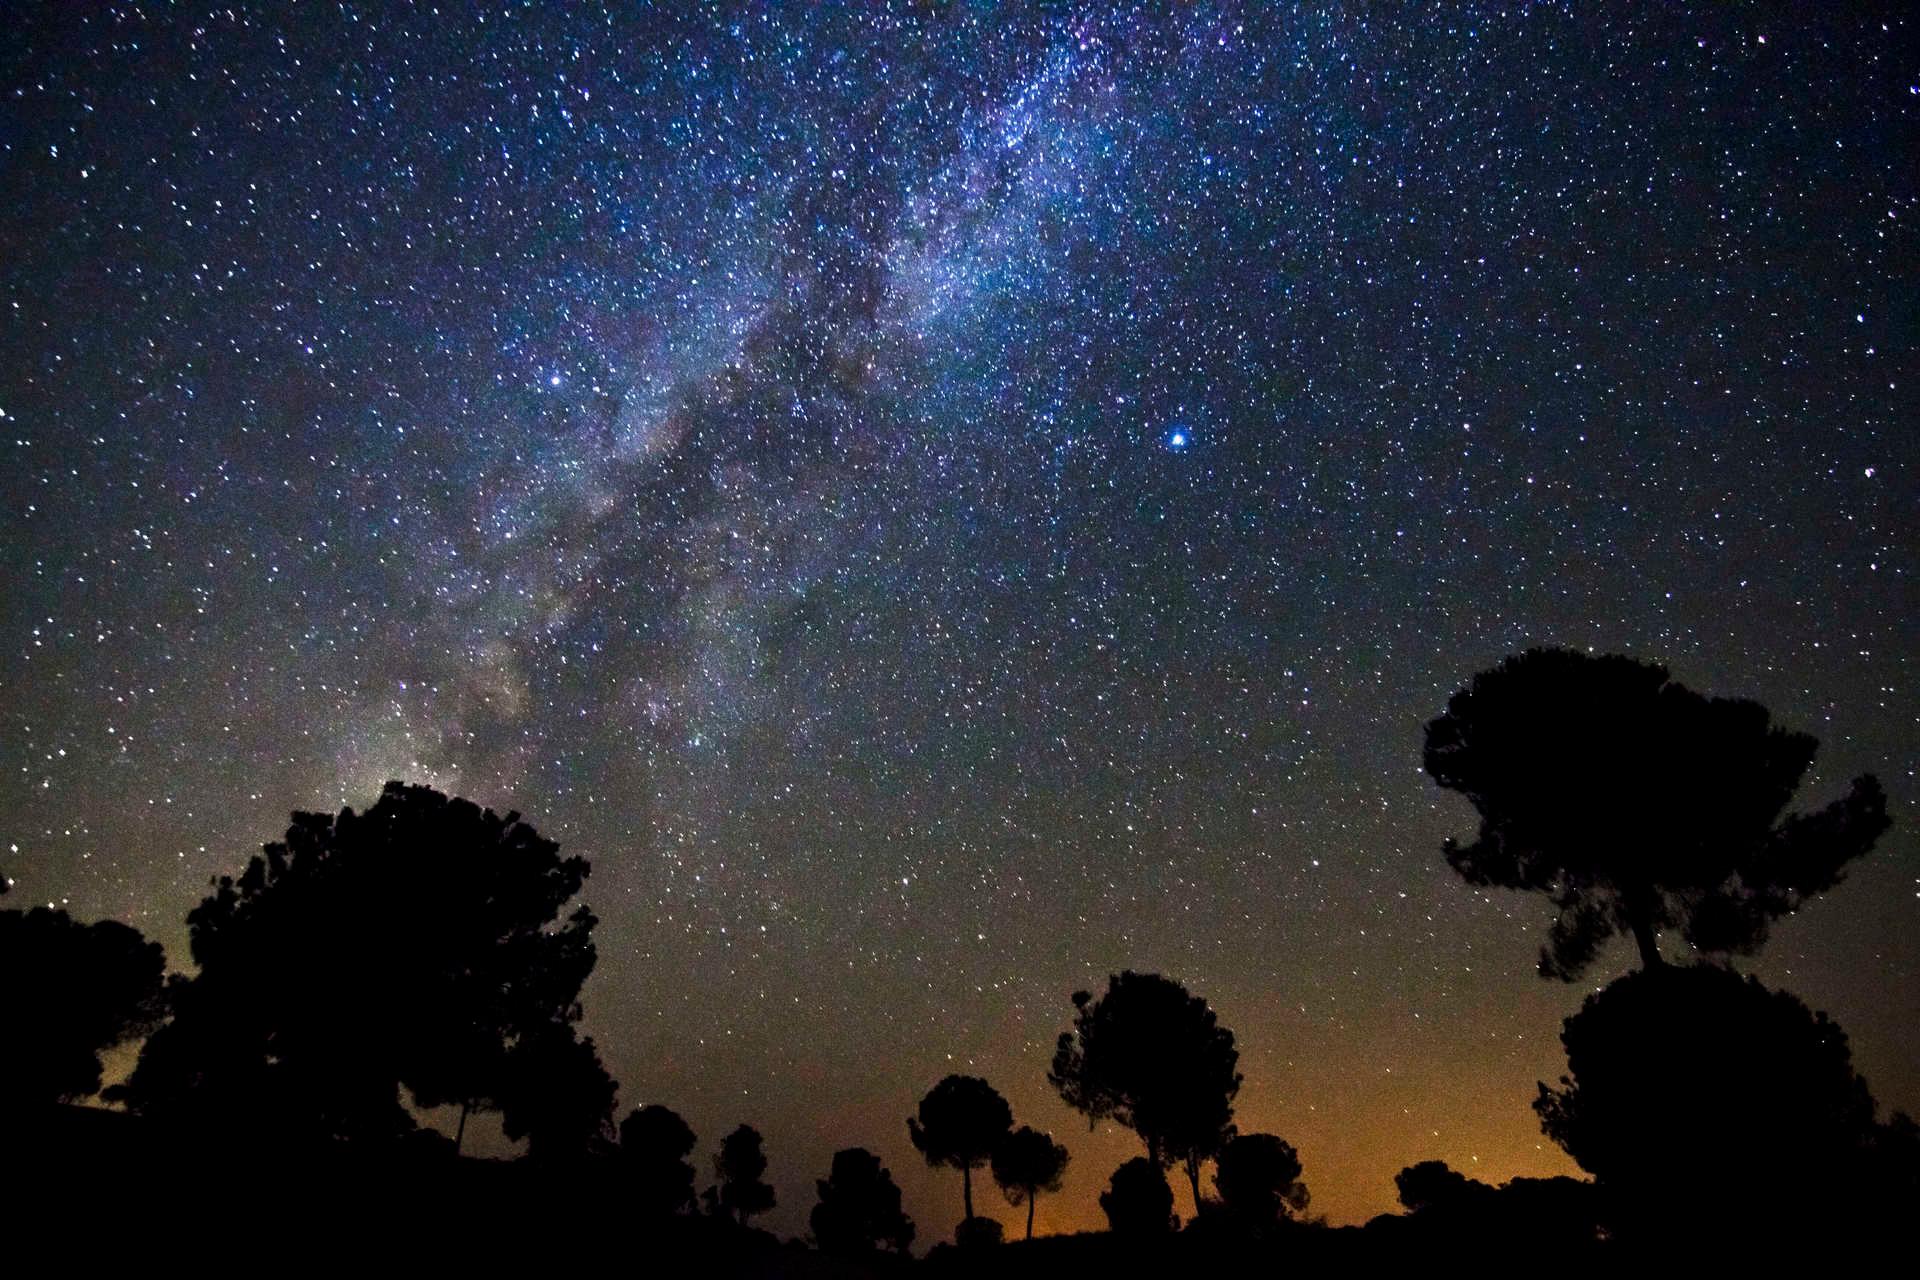 Astroturismo Experiencia Starlight en Sierra Morena